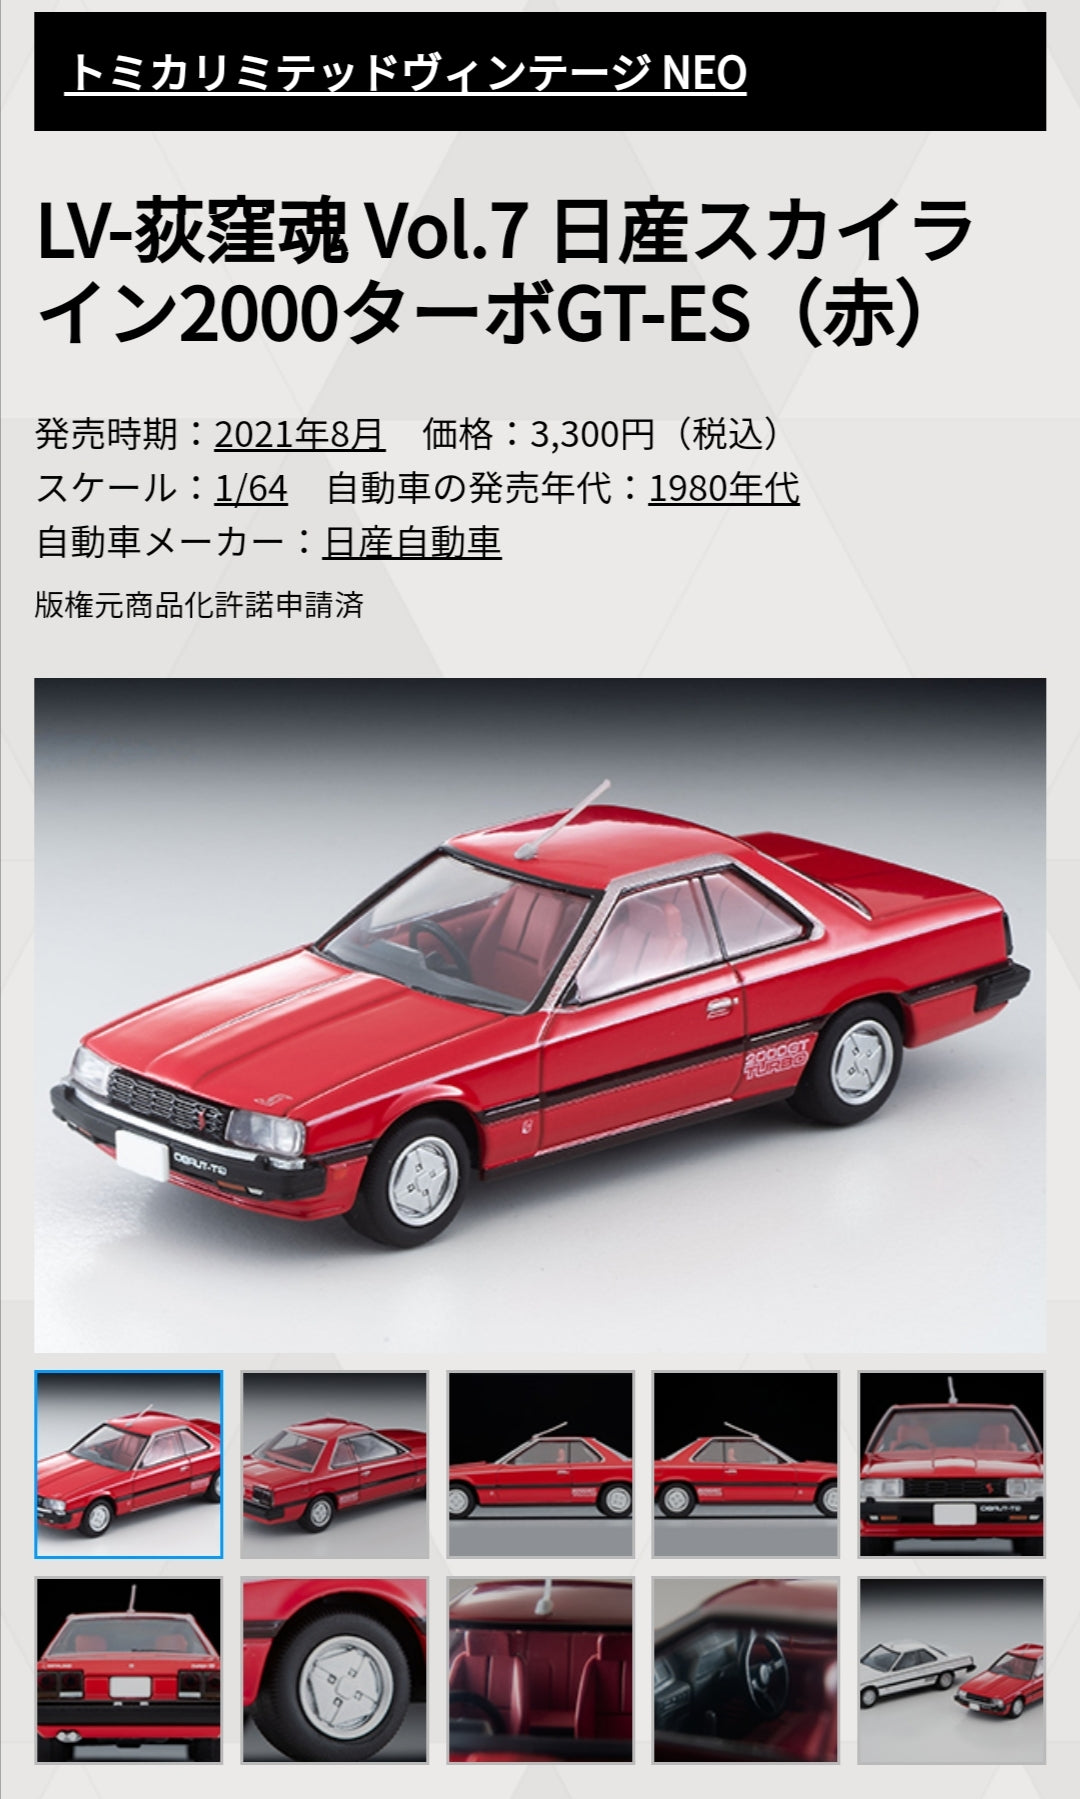 Tomica Limited Vintage LV-Ogikubo Soul Vol.7 Nissan Skyline 2000 Turbo GT-ES (Red)